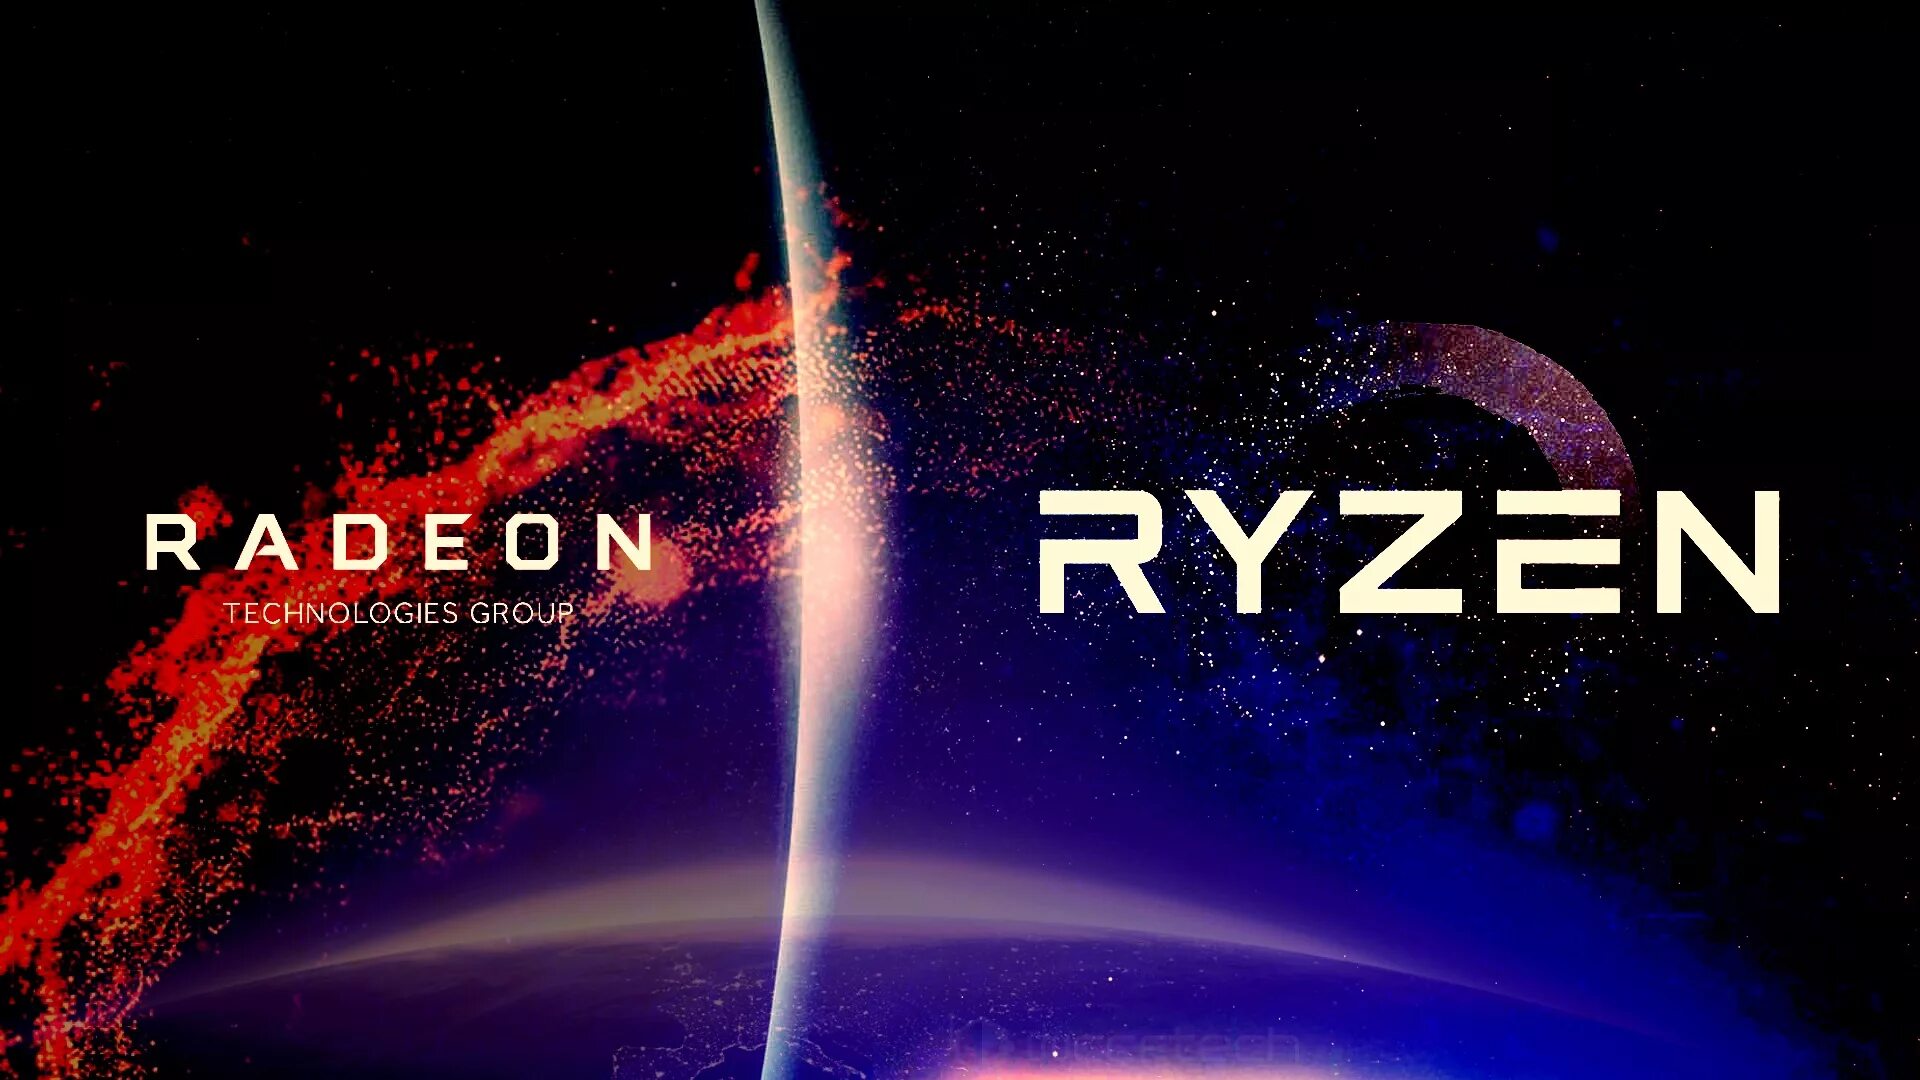 Ryzen 1920x1080. AMD Ryzen 1920 на 1080. AMD обои. Обои AMD Ryzen Radeon. Логотип AMD Ryzen Radeon.